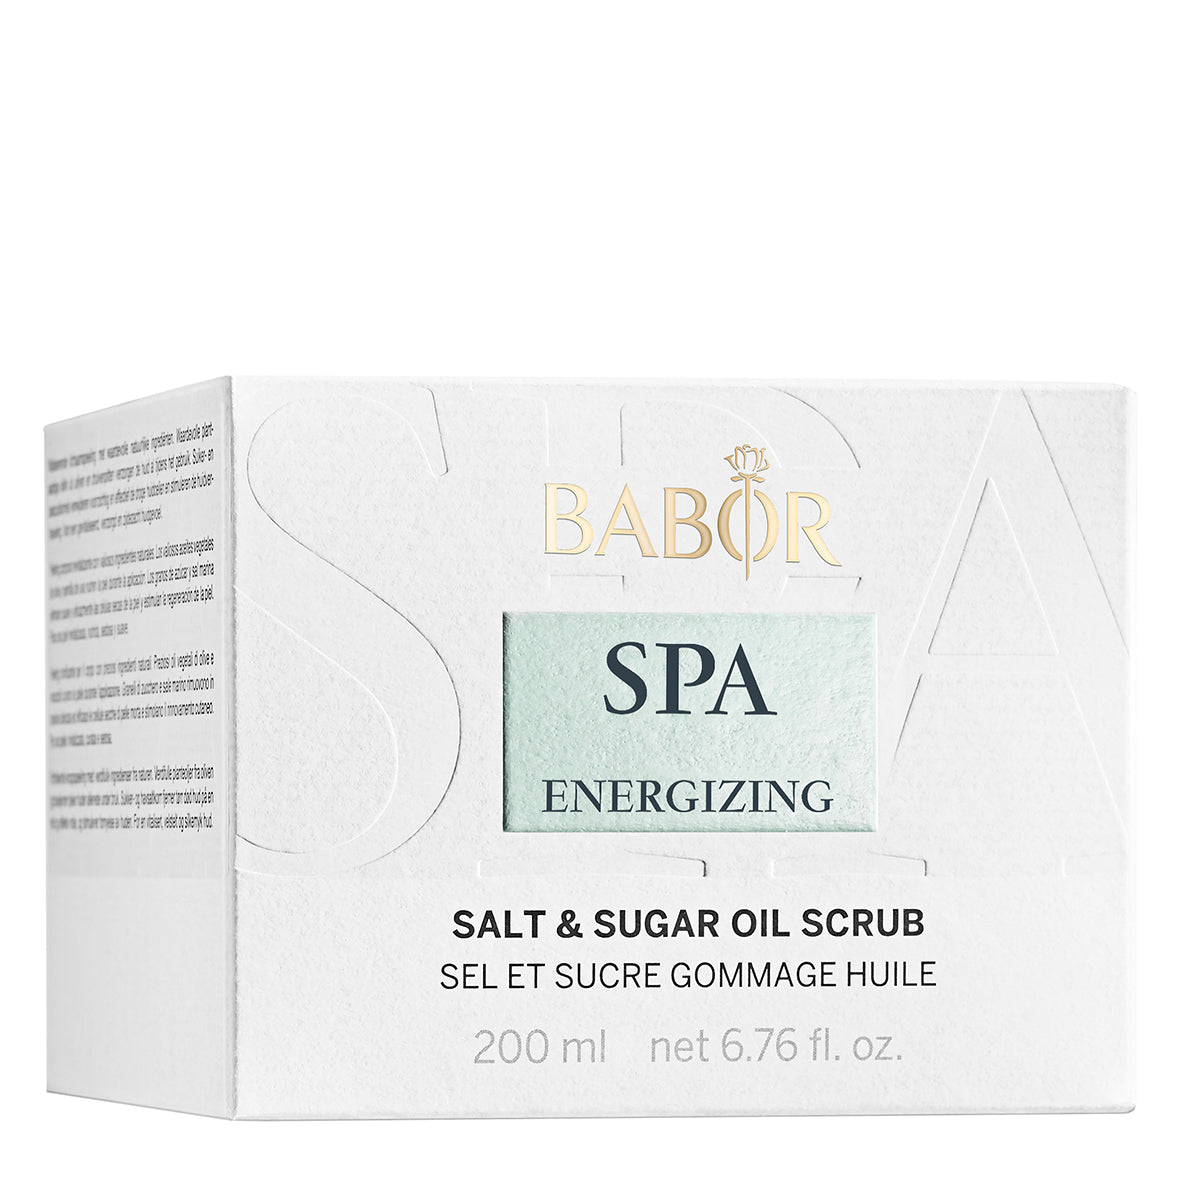 SPA Energizing Salt & Sugar Oil Scrub 200g